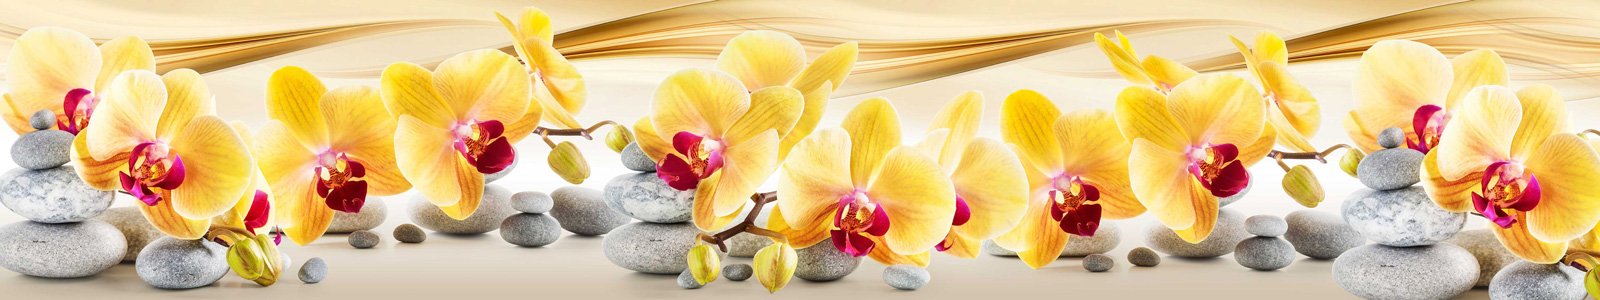 №7352 - Желтые орхидеи на дзен камушках